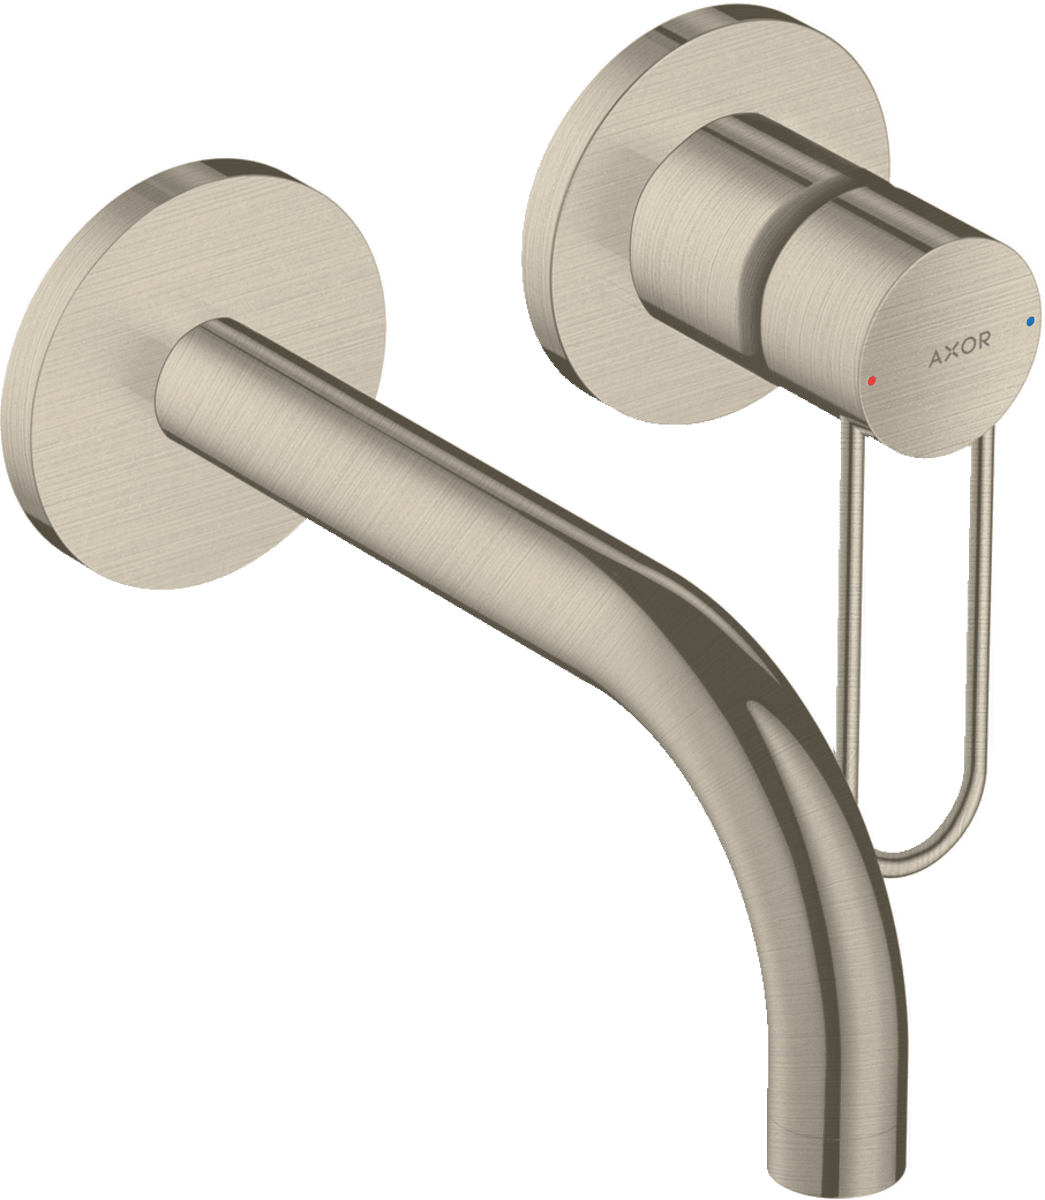 εικόνα του HANSGROHE AXOR Uno Single lever basin mixer for concealed installation wall-mounted with loop handle and spout 165 mm #38121820 - Brushed Nickel